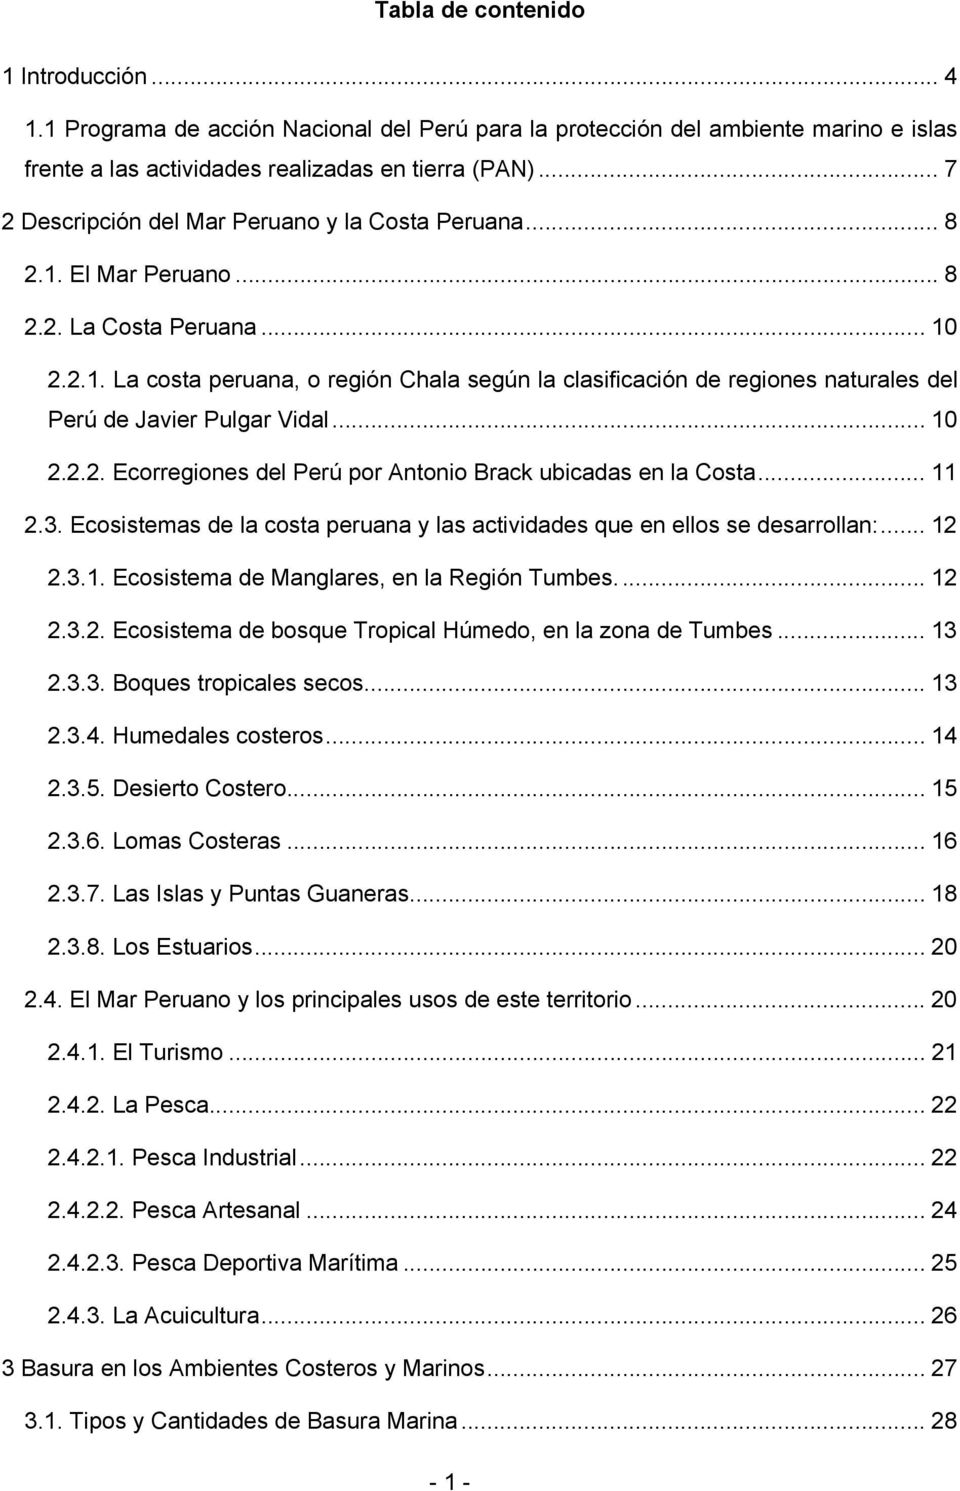 .. 10 2.2.2. Ecorregiones del Perú por Antonio Brack ubicadas en la Costa... 11 2.3. Ecosistemas de la costa peruana y las actividades que en ellos se desarrollan:... 12 2.3.1. Ecosistema de Manglares, en la Región Tumbes.